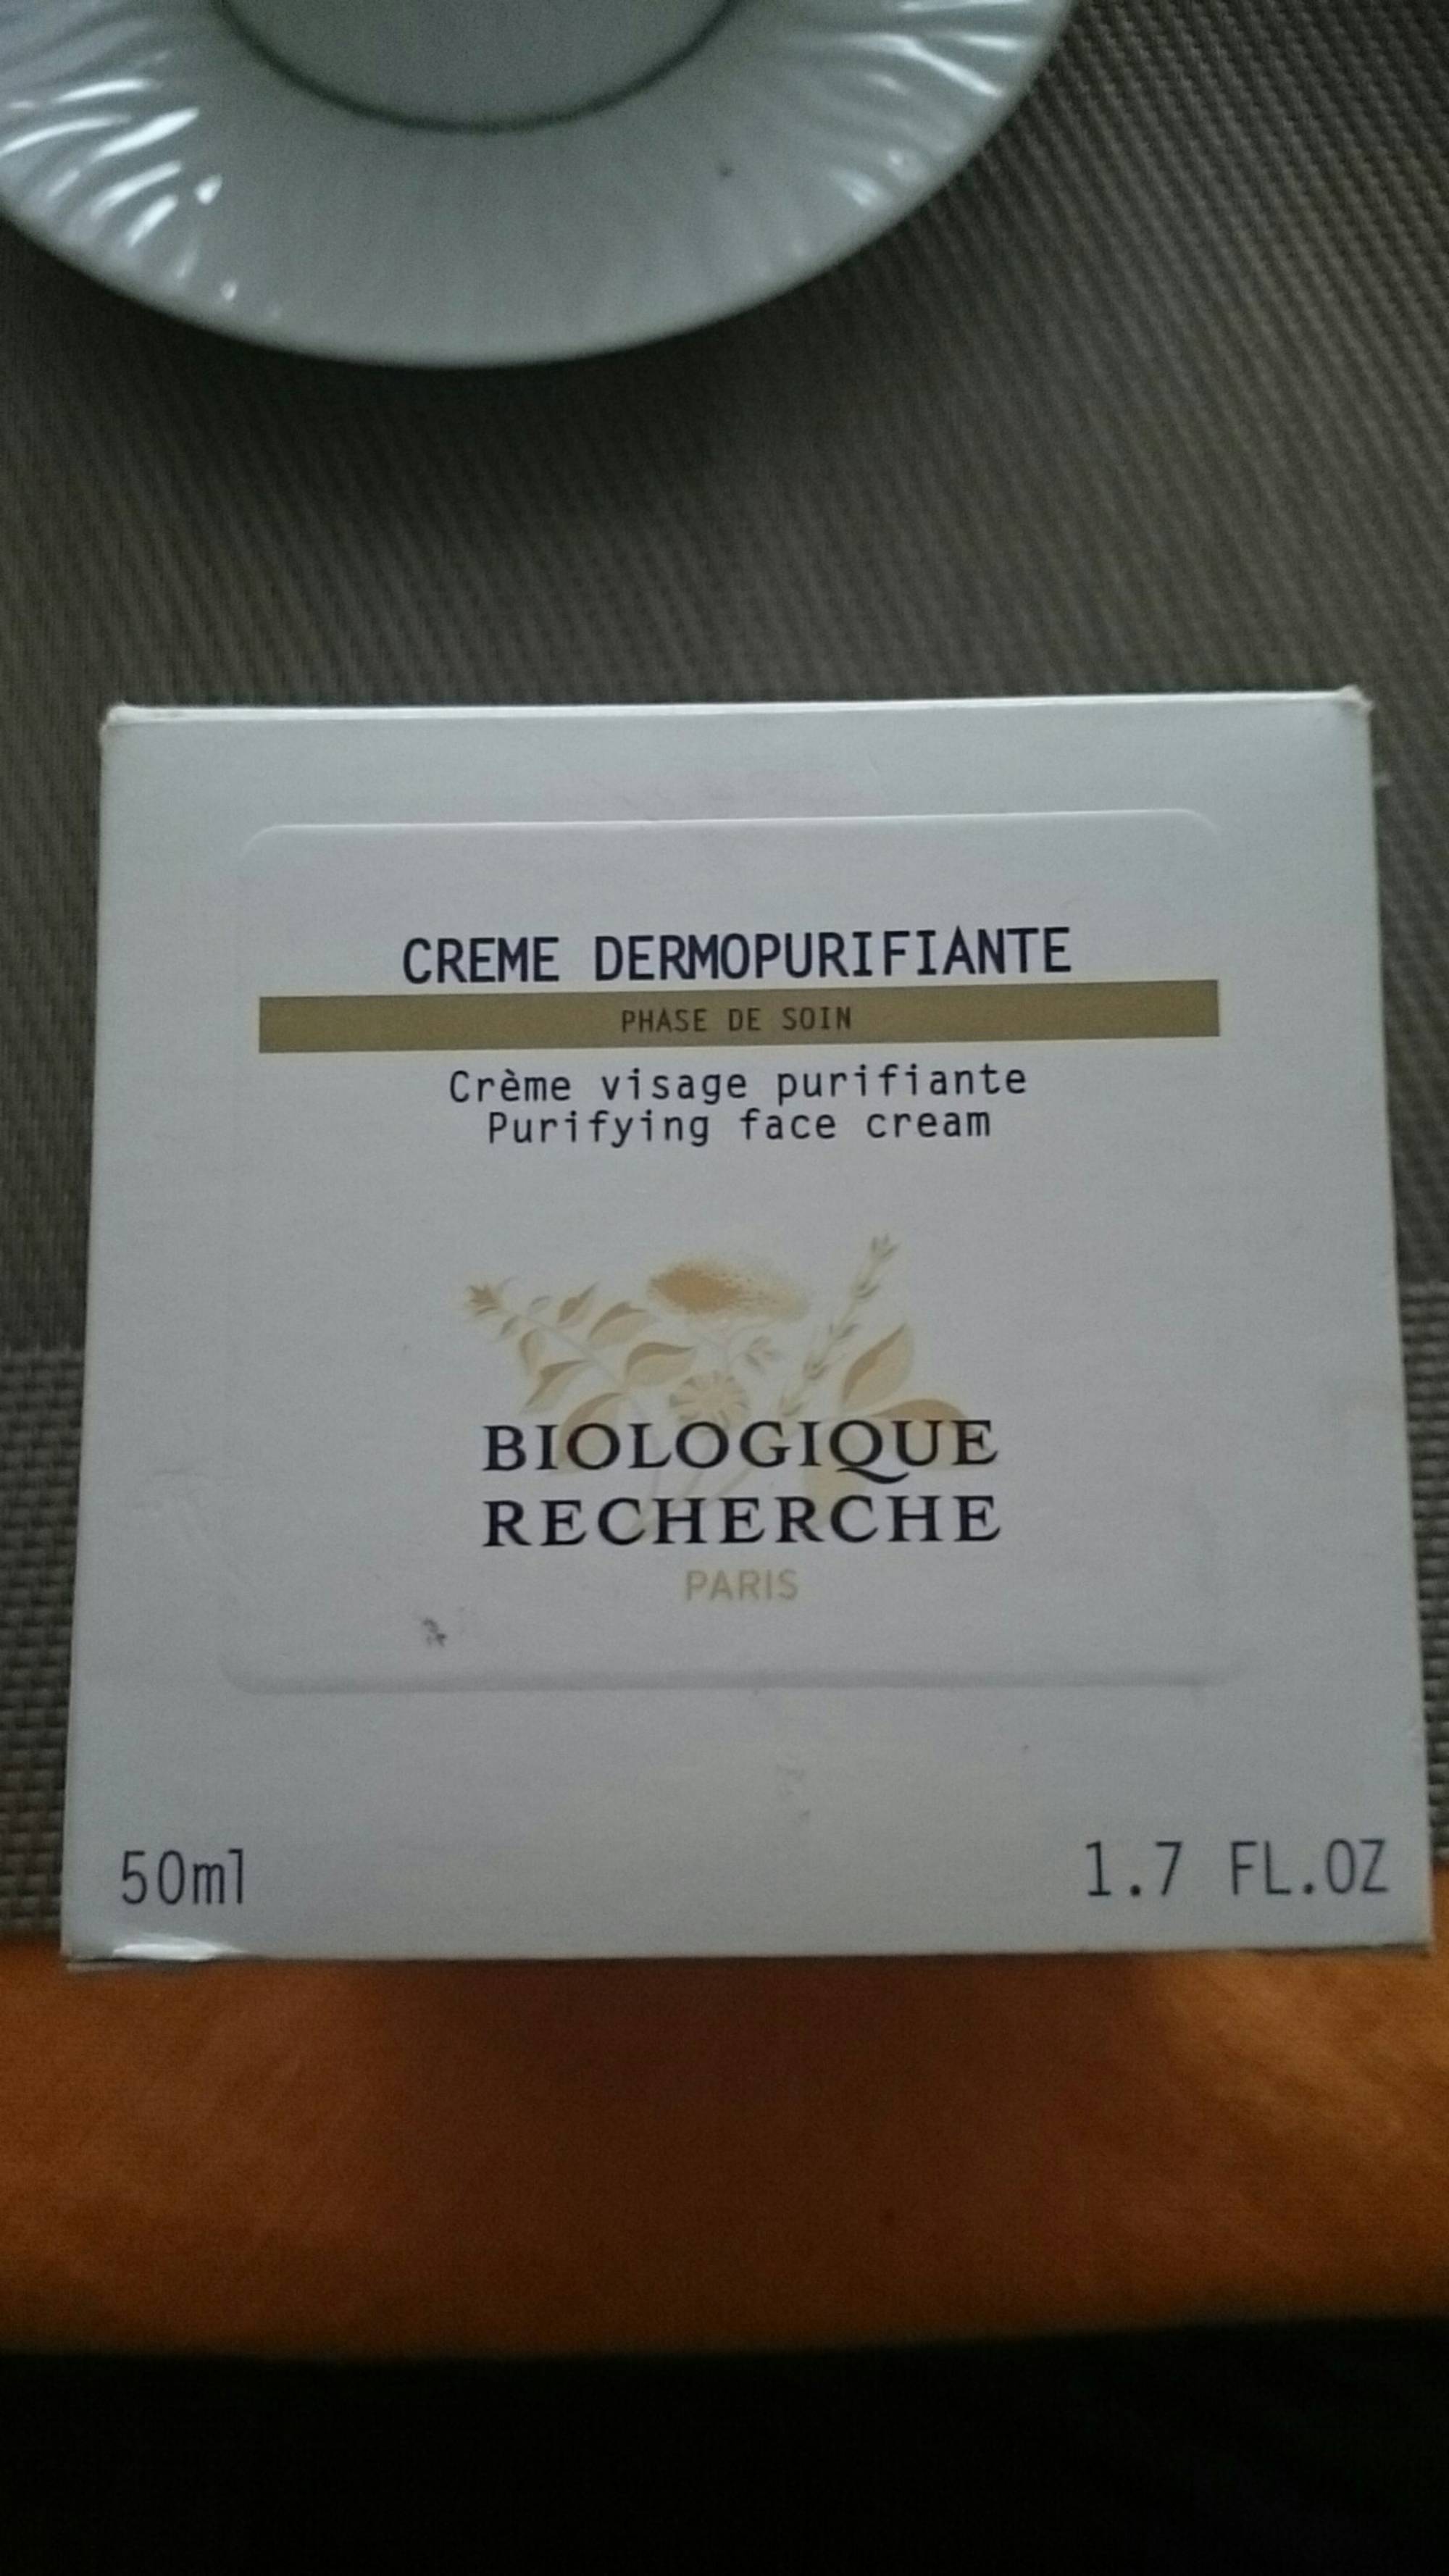 BIOLOGIQUE RECHERCHE - Crème dermopurifiante visage 